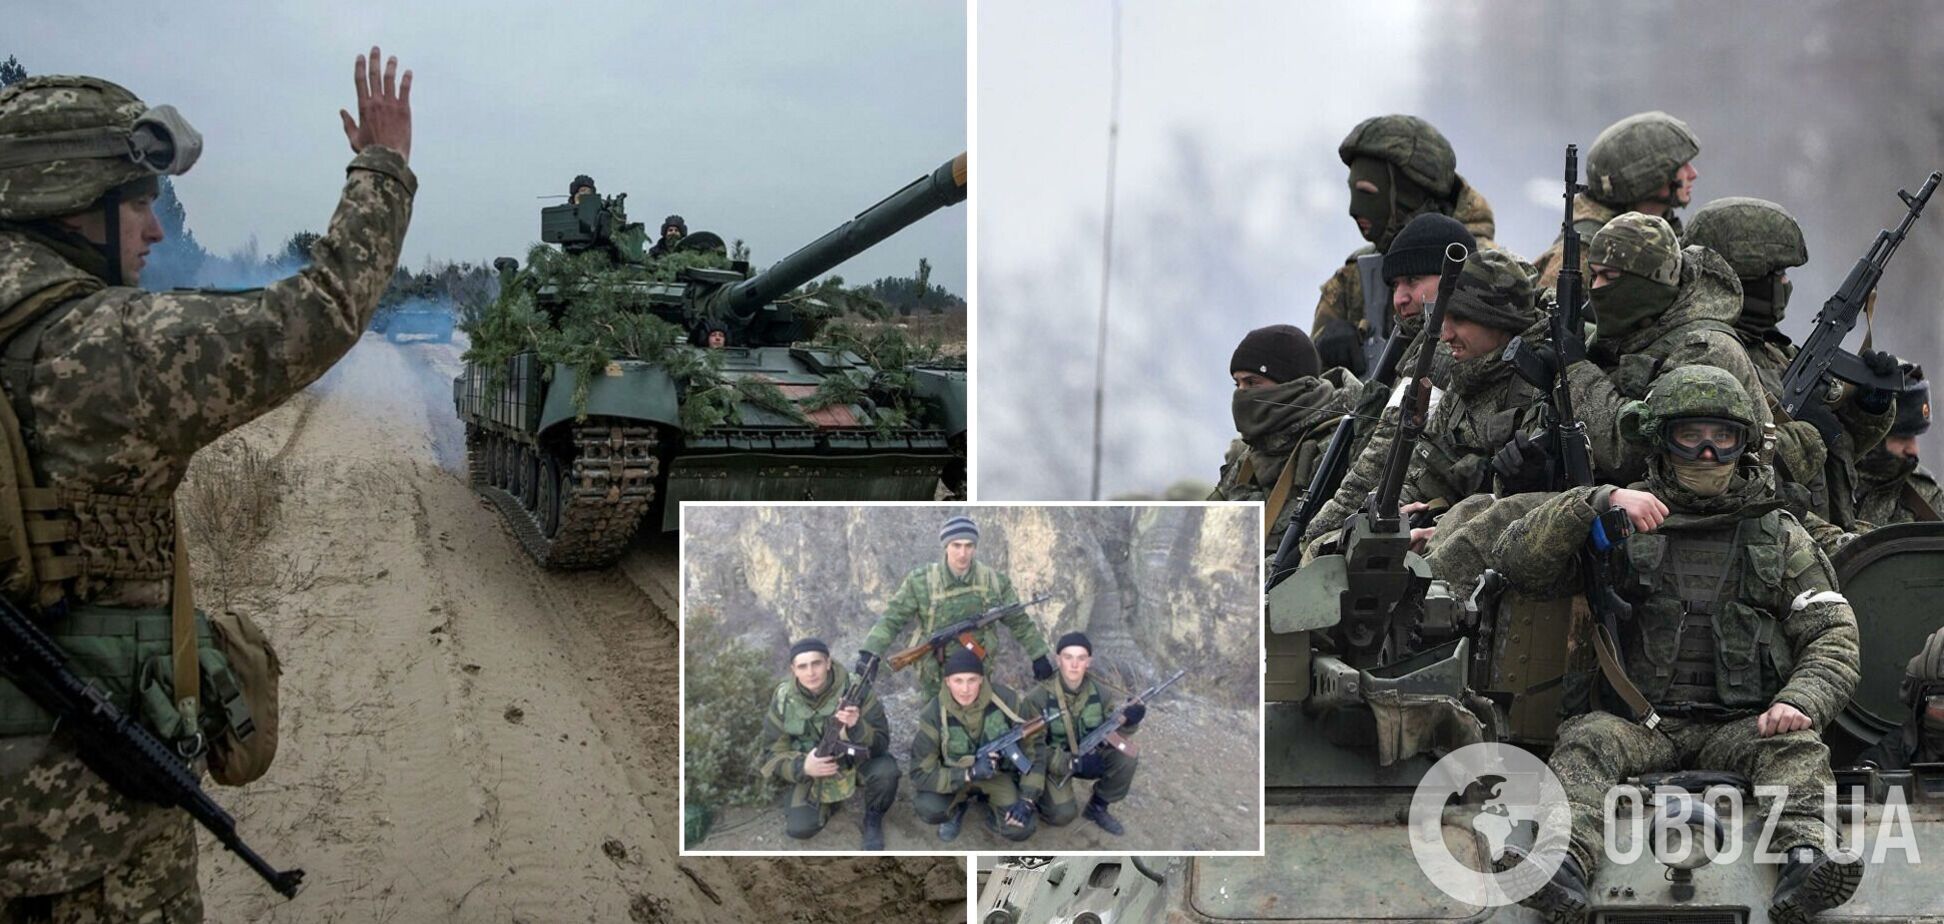 Розвідка оприлюднила імена солдатів із Дагенстану, які воюють проти України